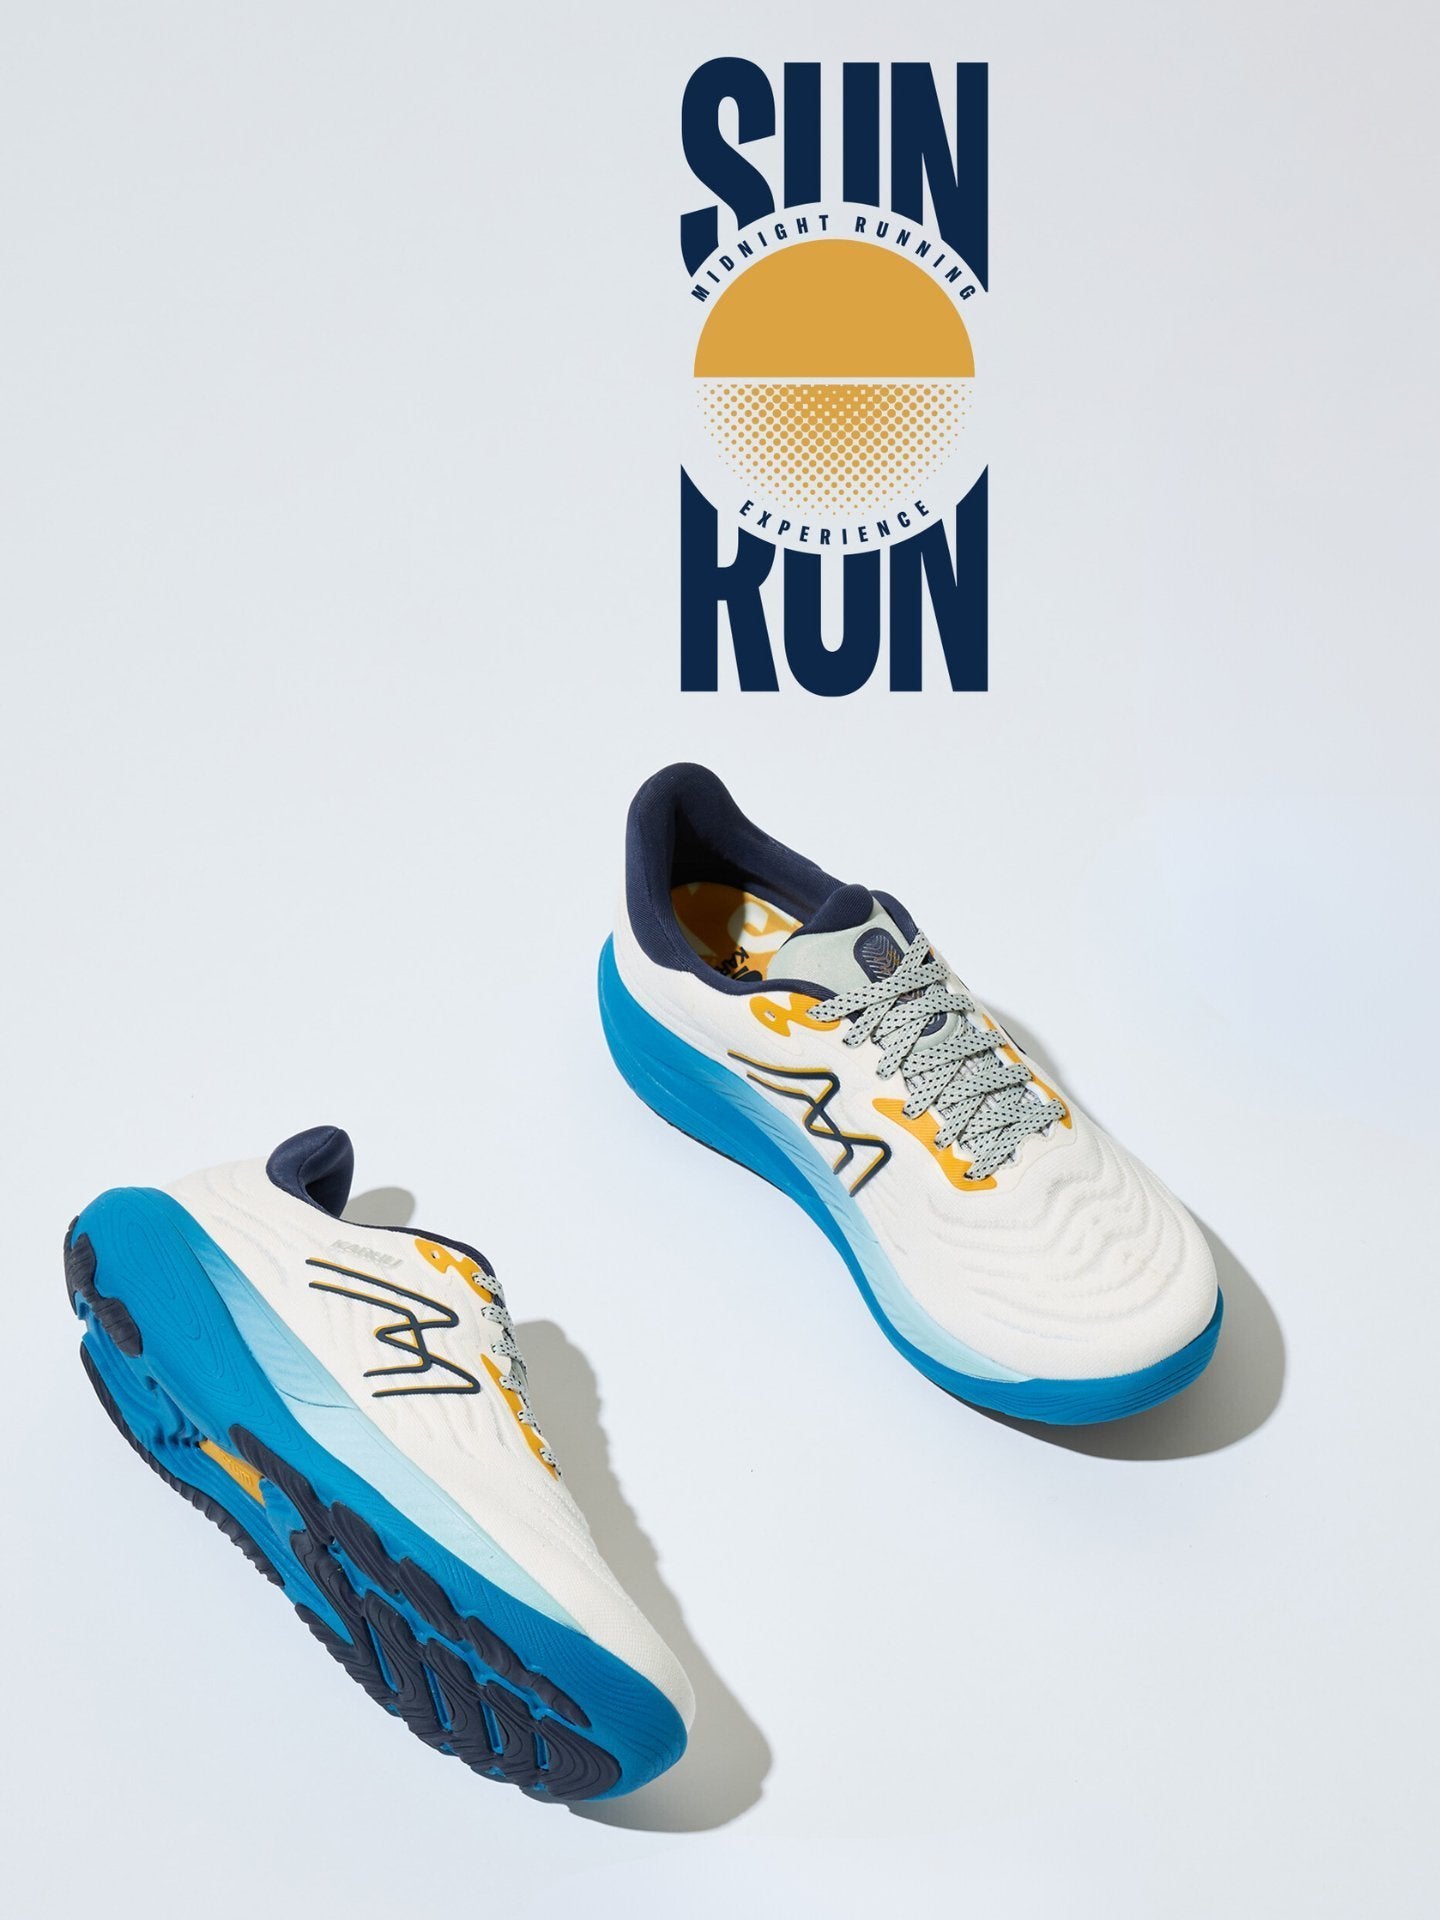 KARHU men's Ikoni 3.0 with  Sun Run logo